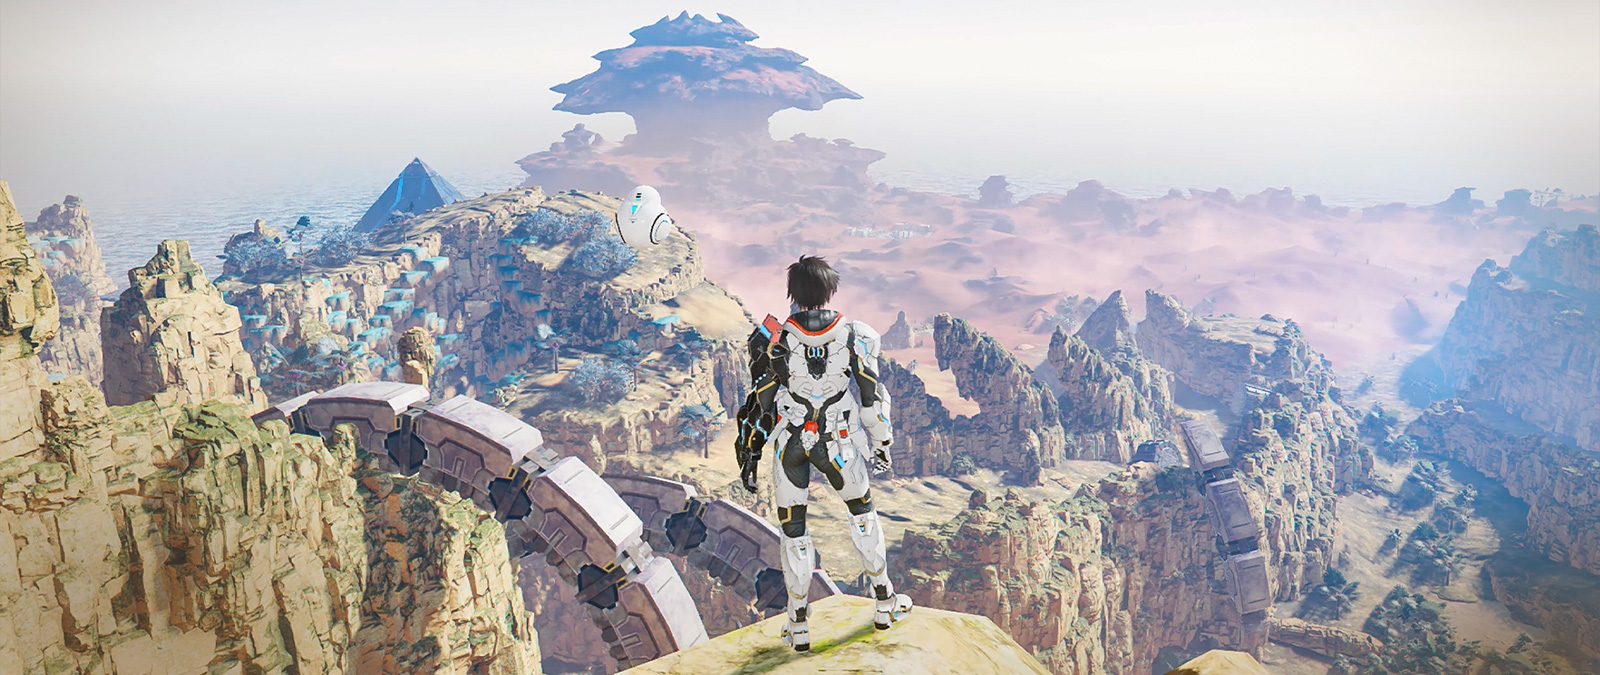 Un personnage portant une armure se tient sur une falaise surplombant une vallée.